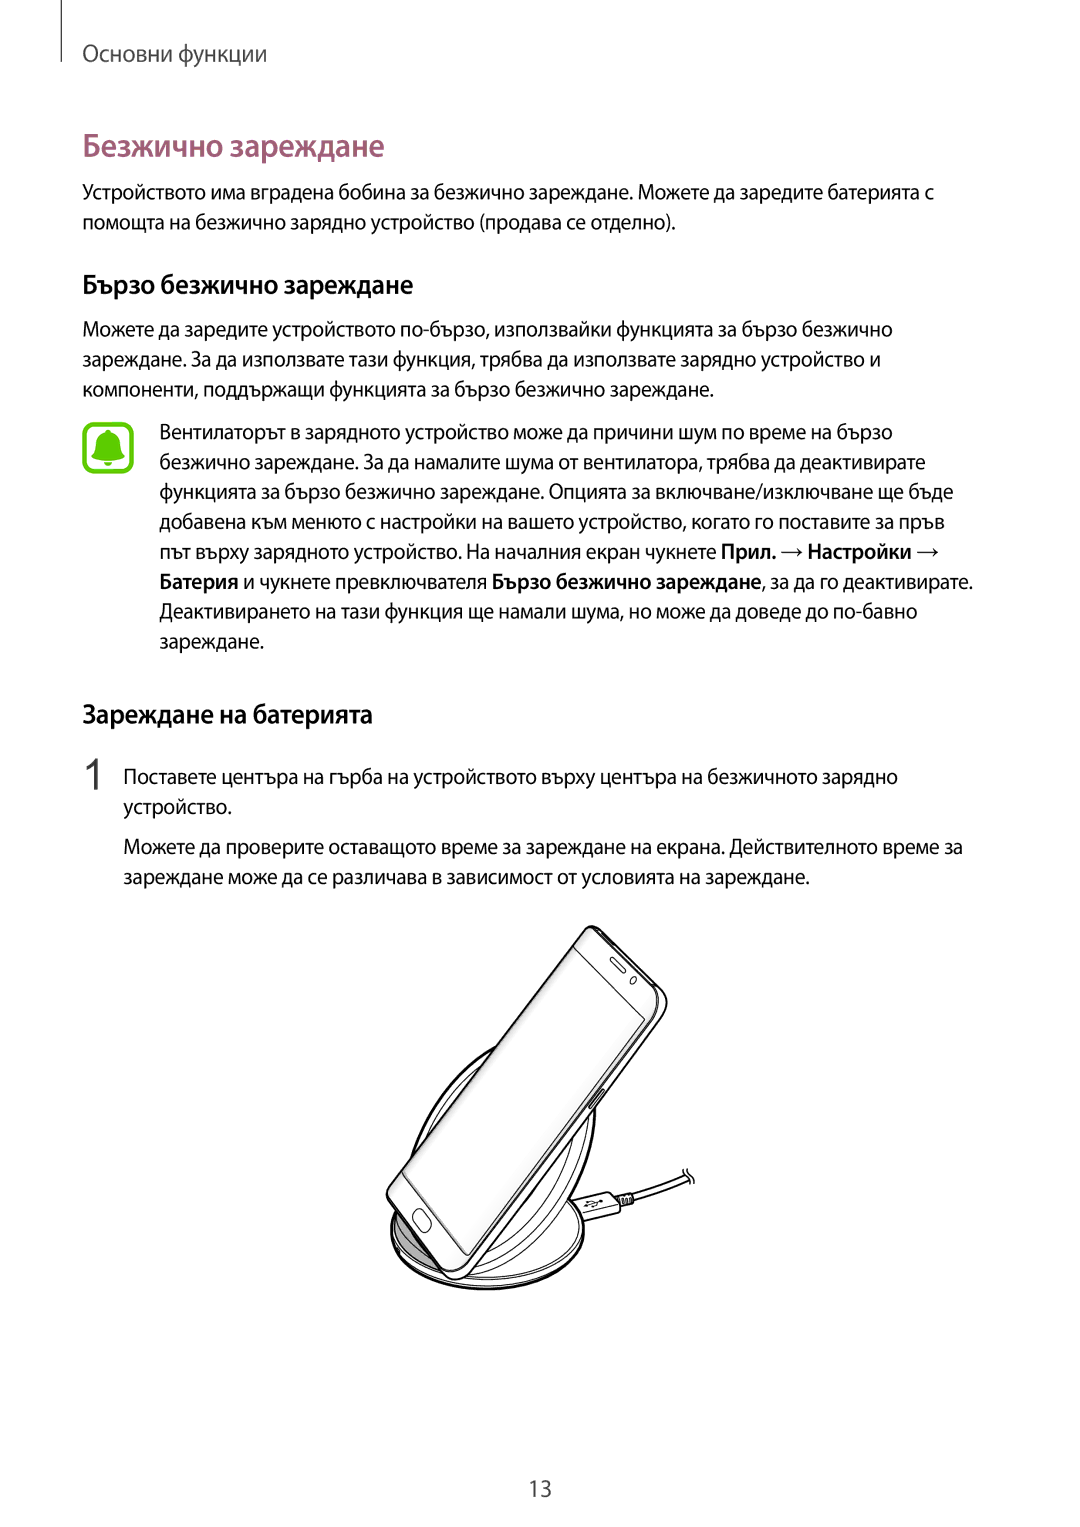 Samsung SM-G935FZDABGL manual Безжично зареждане, Бързо безжично зареждане, Зареждане на батерията 